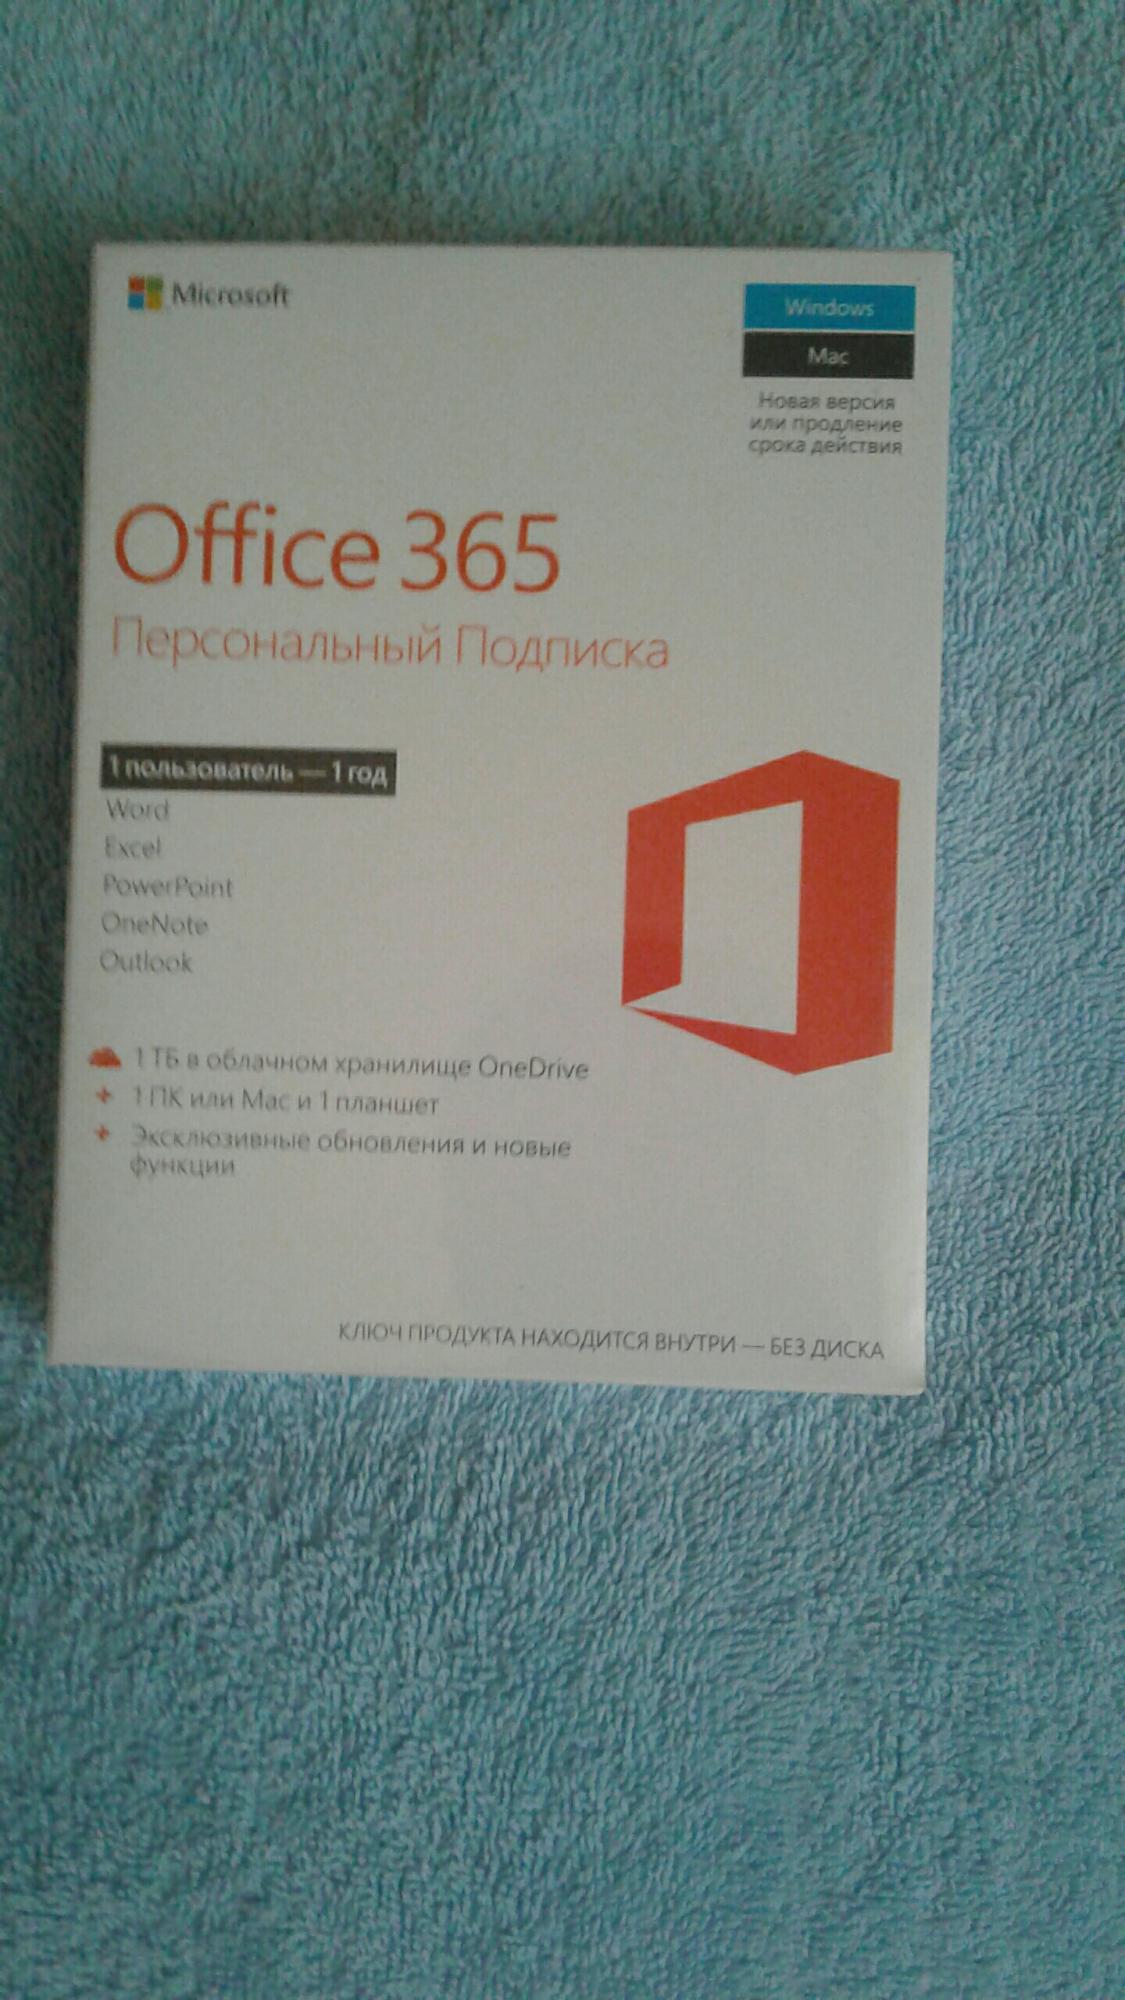 Лицензия офис 365. Office 365 для дома. Офис 365 купить лицензию. 365 Ин.